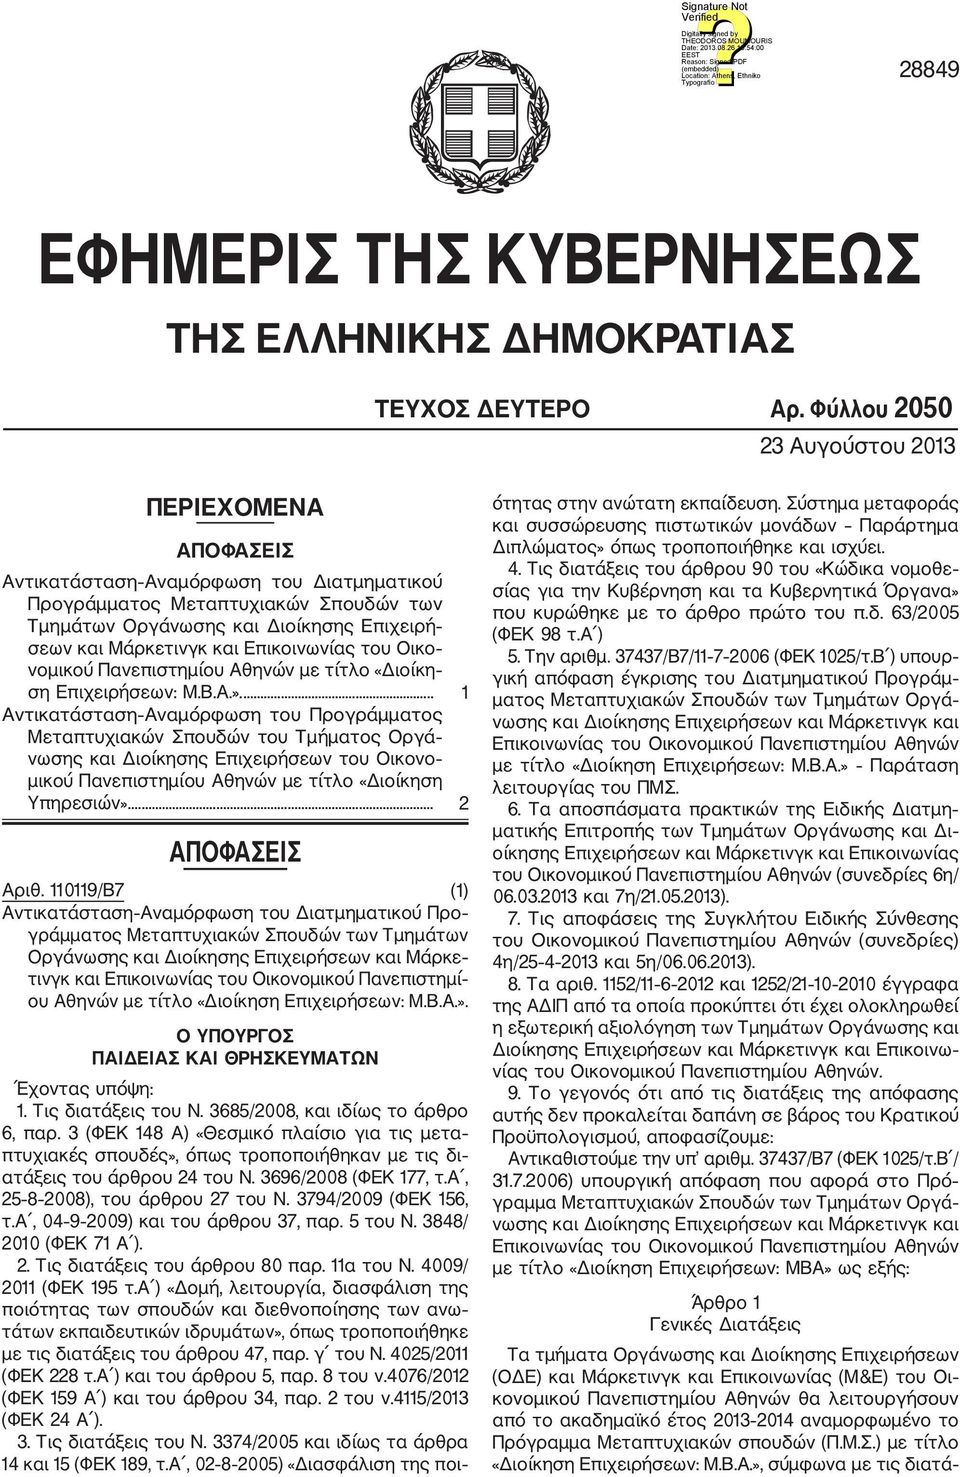 νομικού Πανεπιστημίου Αθηνών με τίτλο «Διοίκη ση Επιχειρήσεων: Μ.Β.Α.».